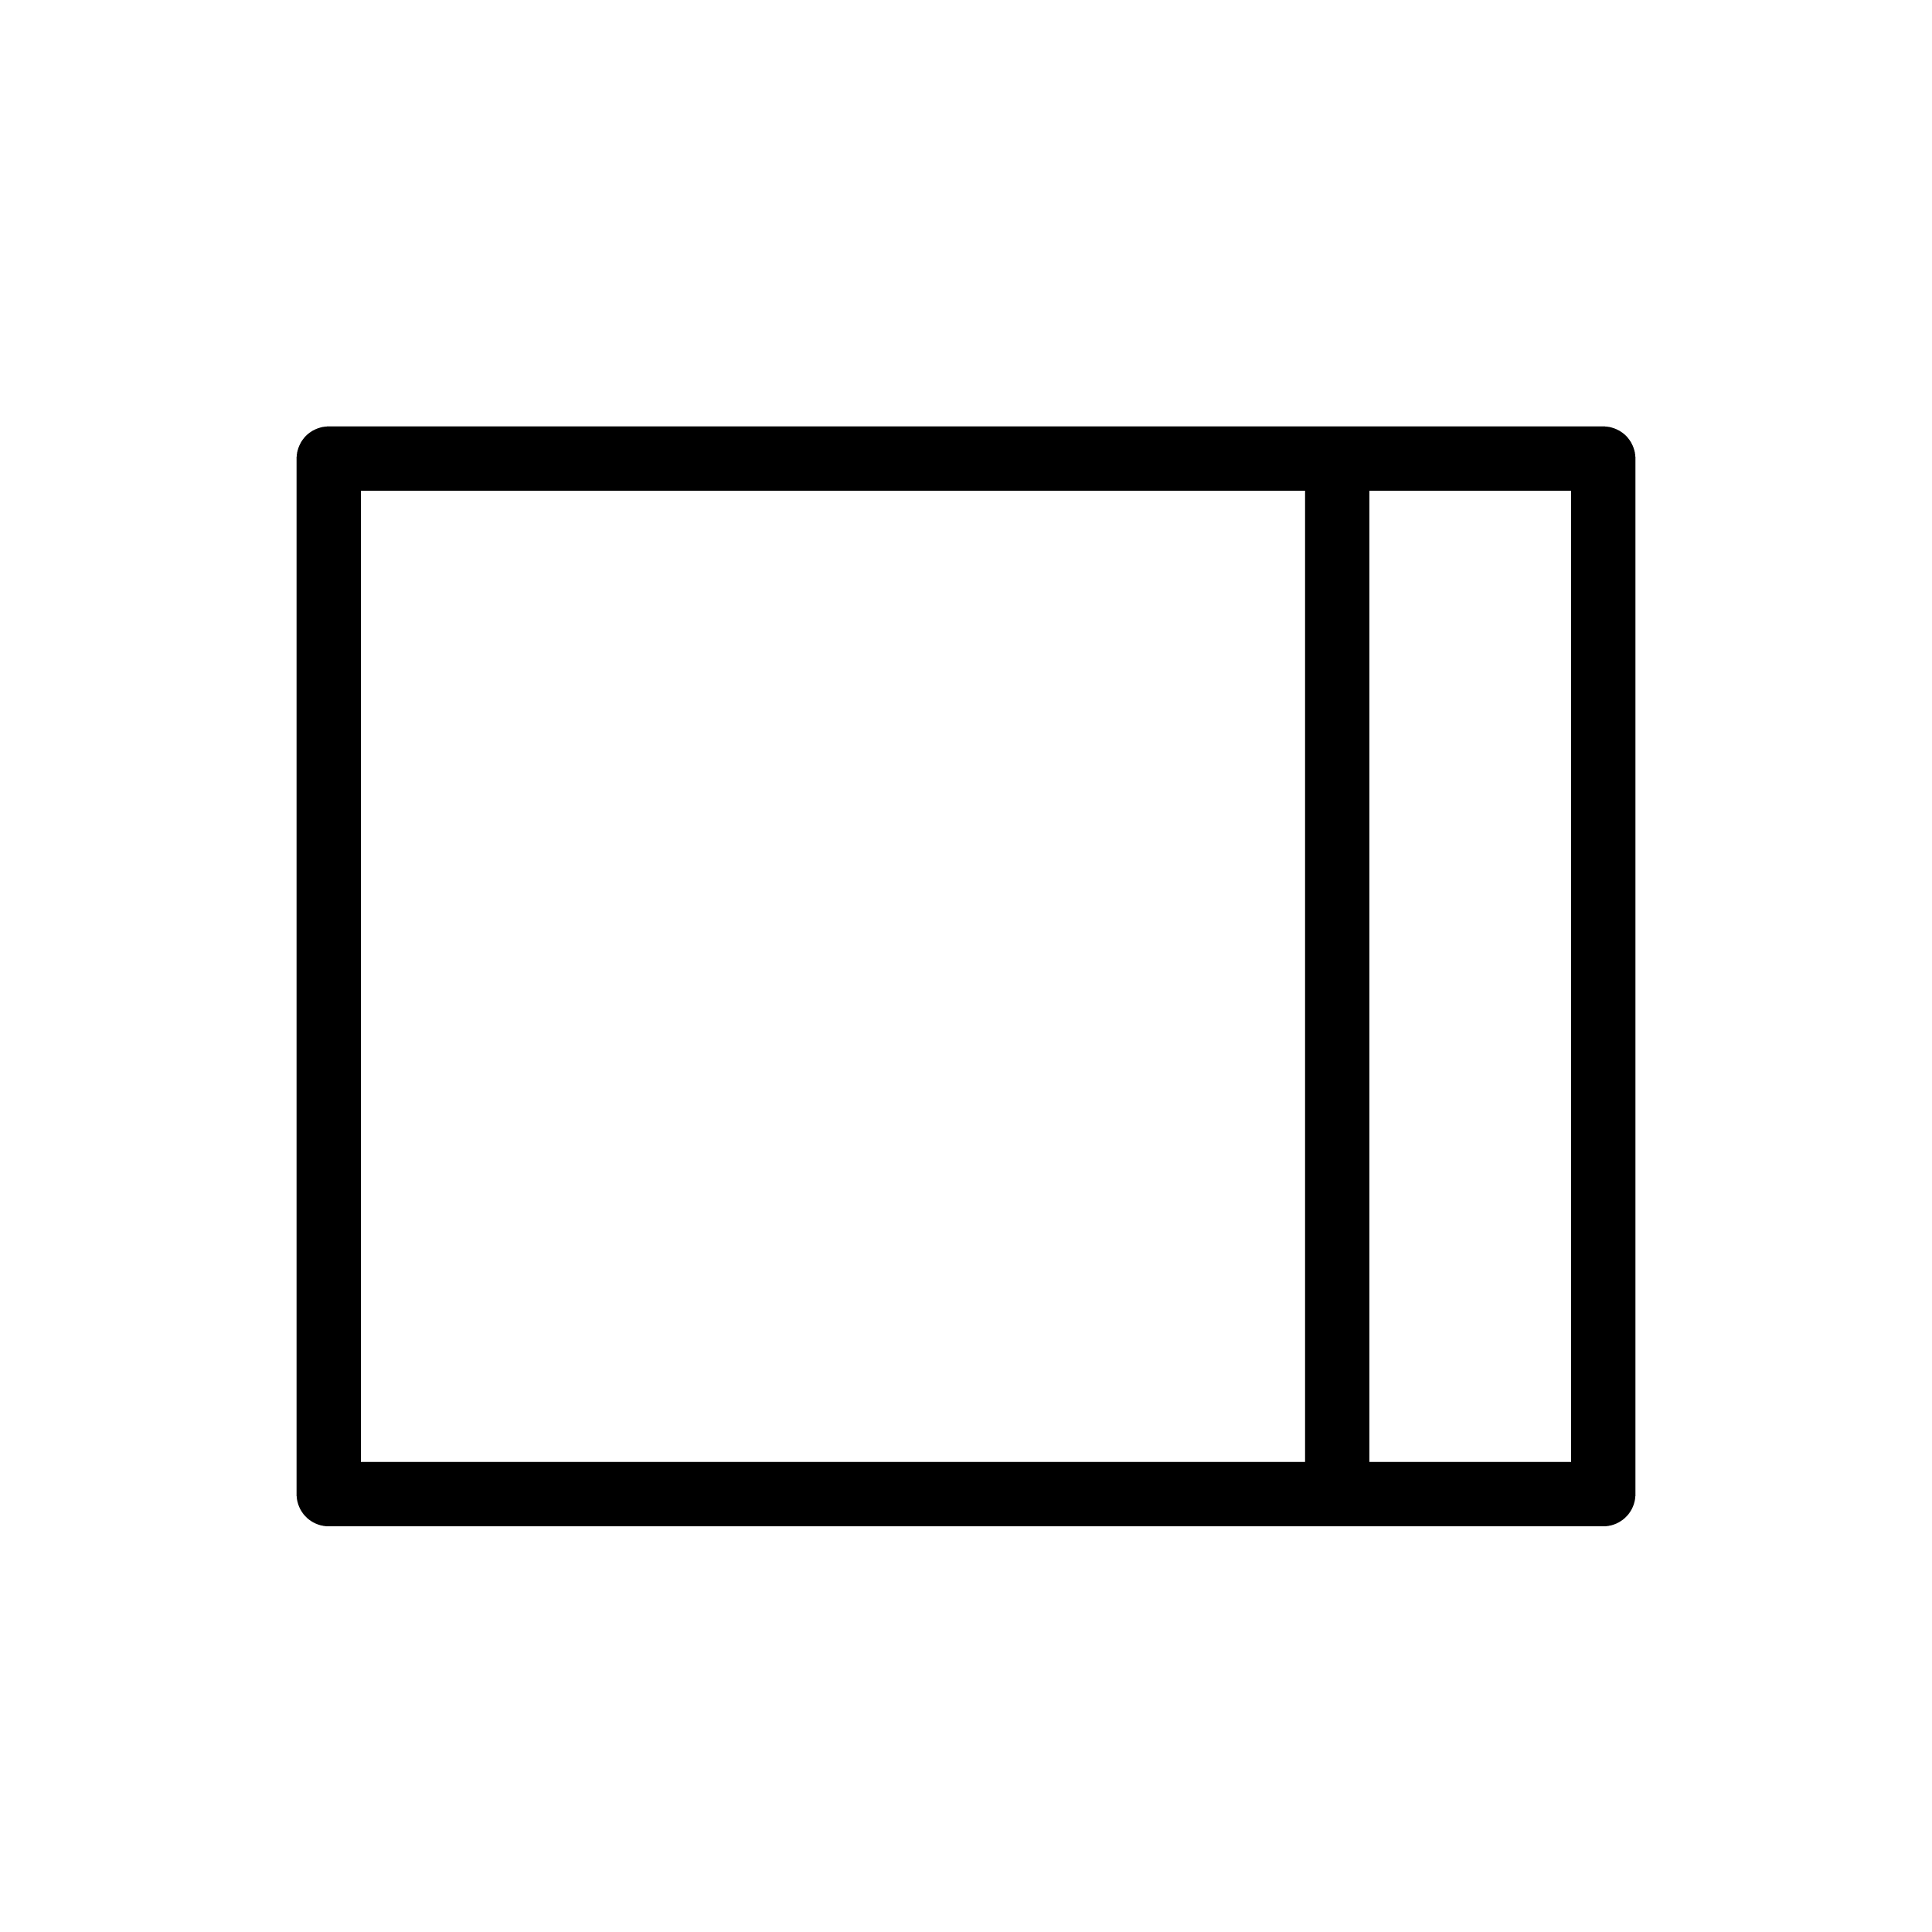 bouton d’ancrage : rectangle avec une ligne verticale le divisant près du côté droit